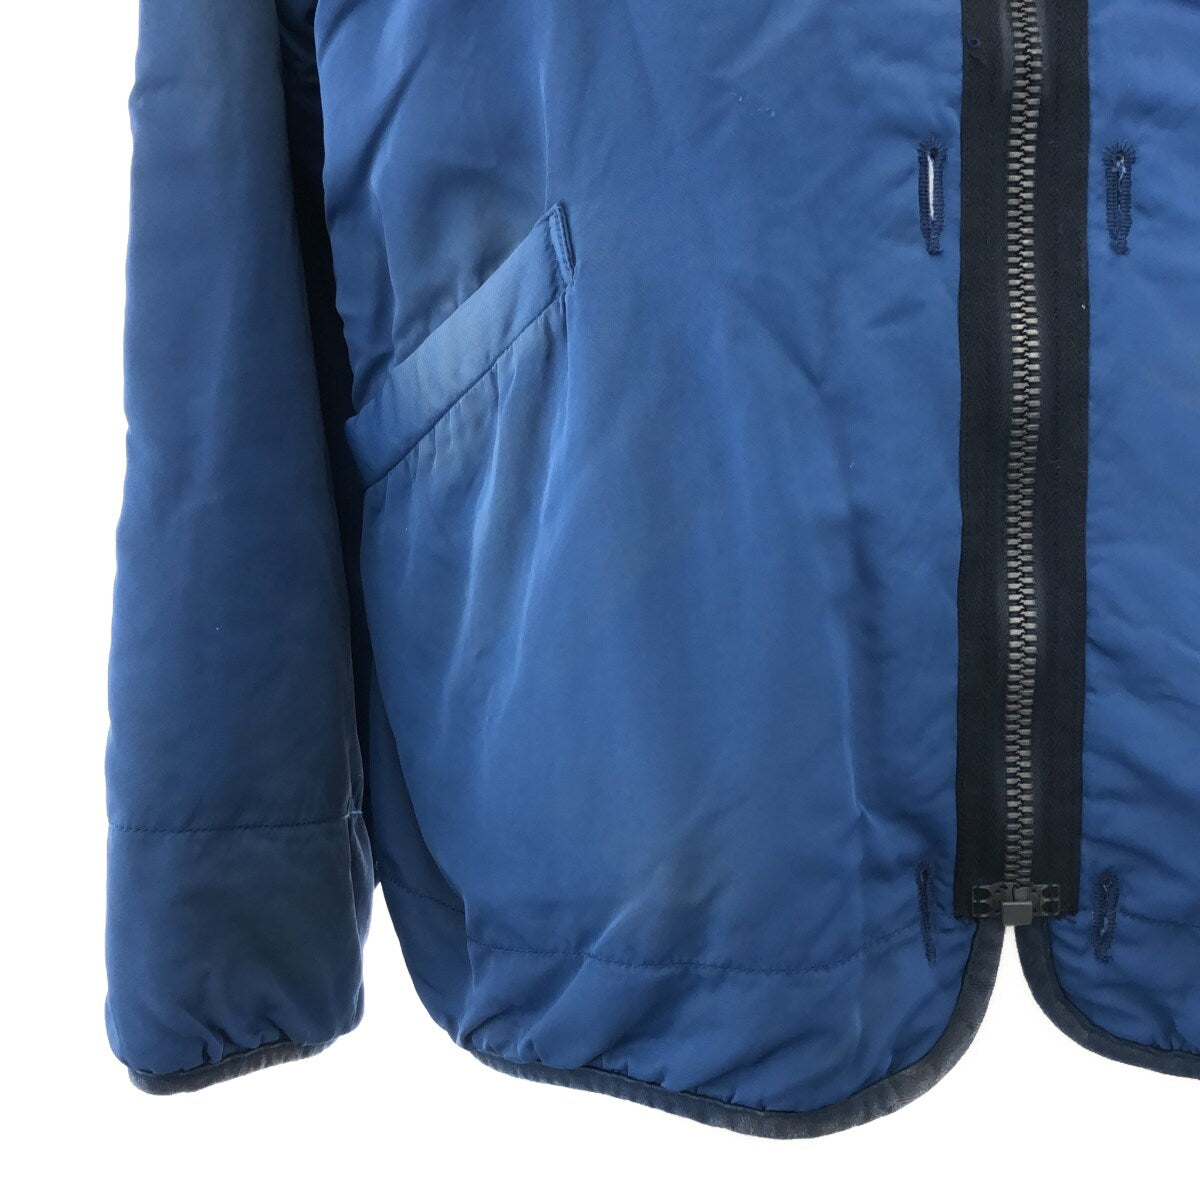 イチオリーズ 23ss visvim iris liner jacket blue サイズ1 | www 